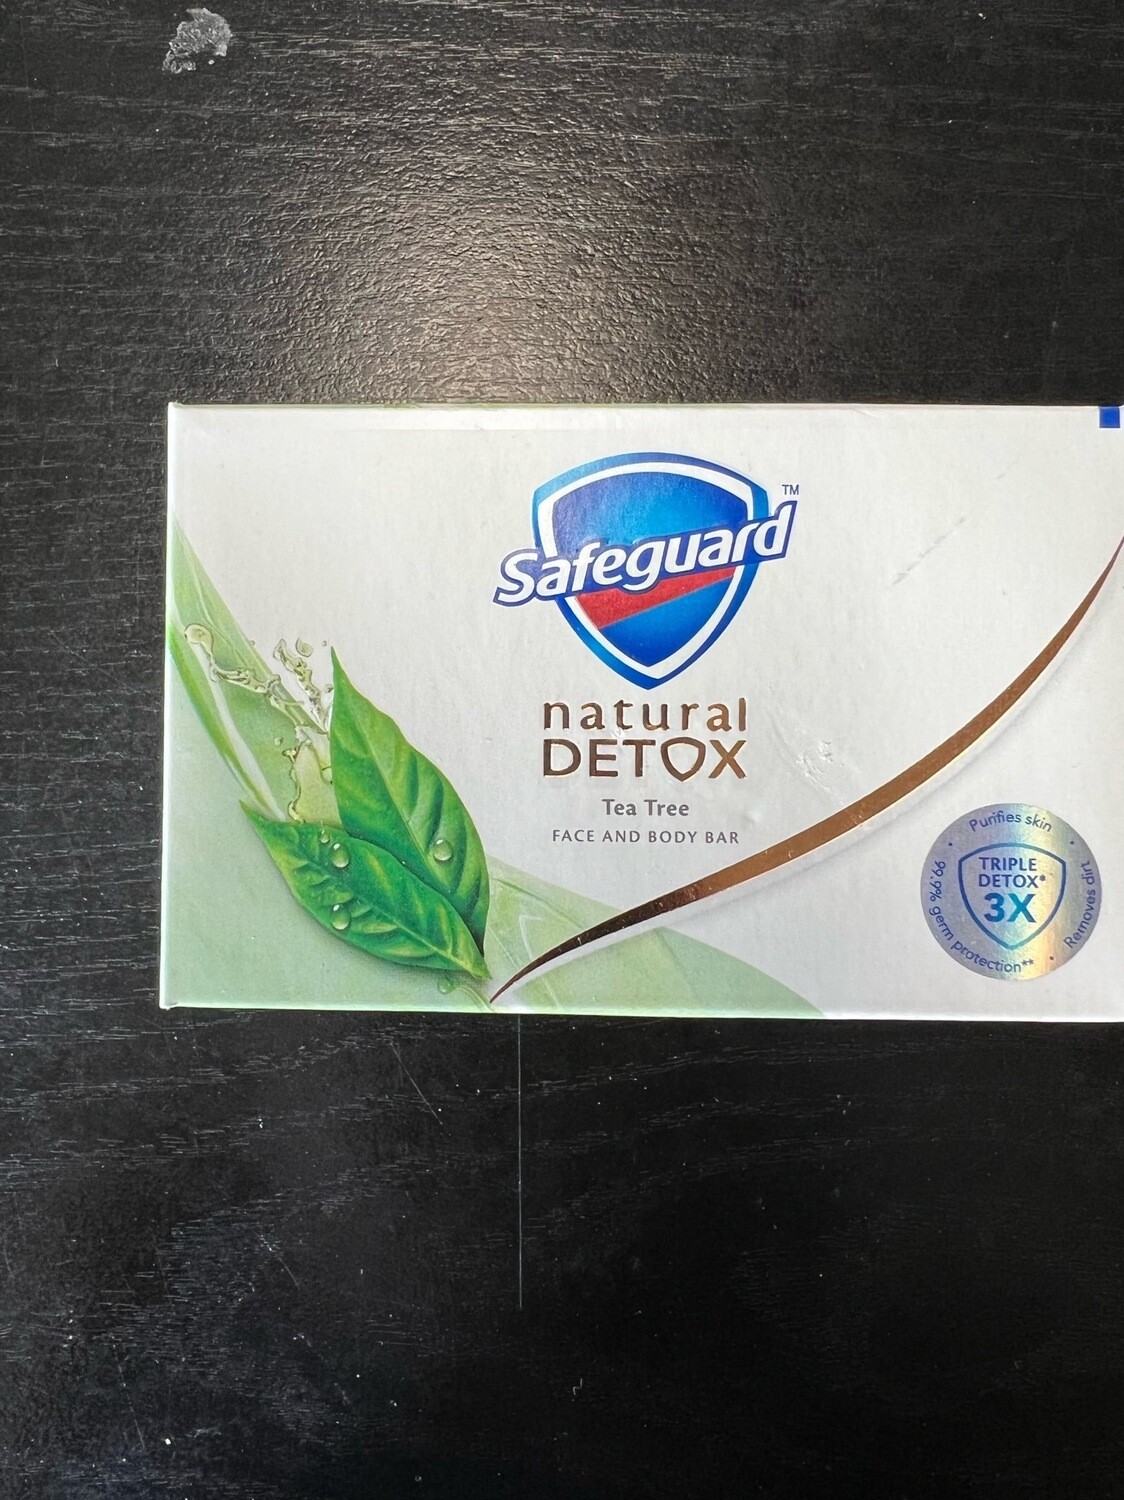 Safeguard soap natural detox Tea Tree